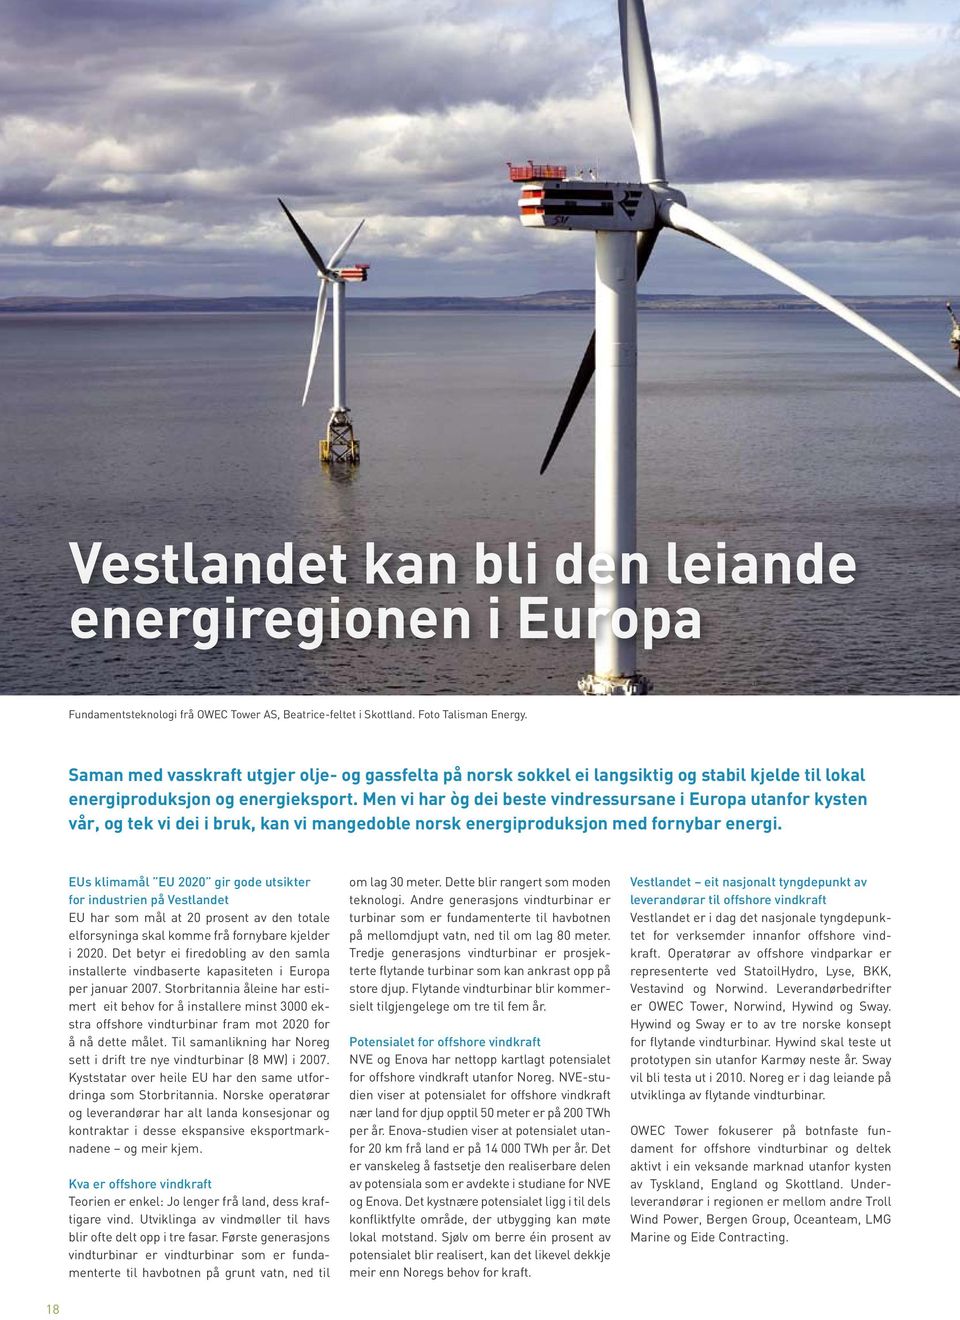 Men vi har òg dei beste vindressursane i Europa utanfor kysten vår, og tek vi dei i bruk, kan vi mangedoble norsk energiproduksjon med fornybar energi.